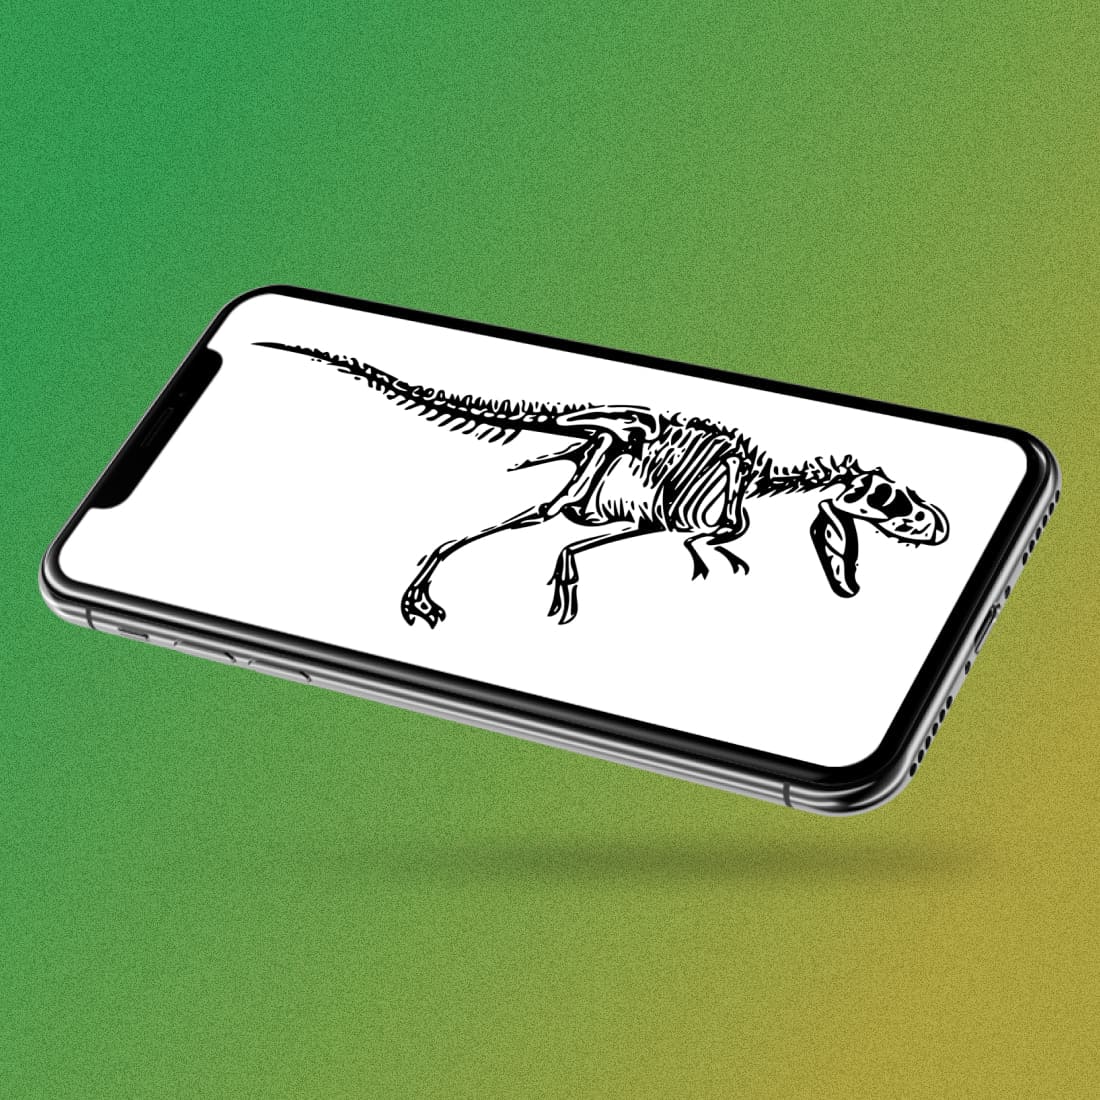 Dinosaur T-rex Tyrannosaurus on Phone Lockscreen.